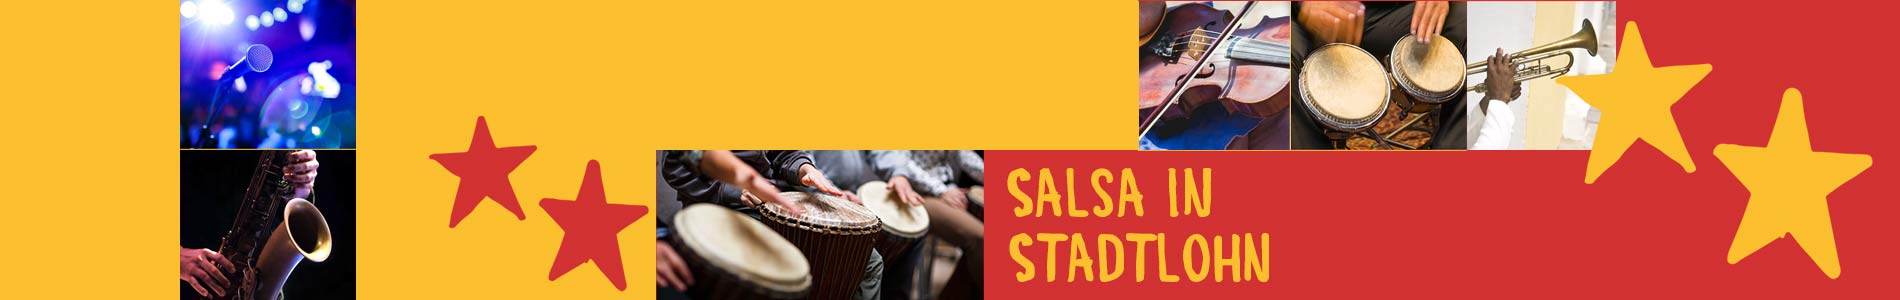 Salsa in Stadtlohn – Salsa lernen und tanzen, Tanzkurse, Partys, Veranstaltungen